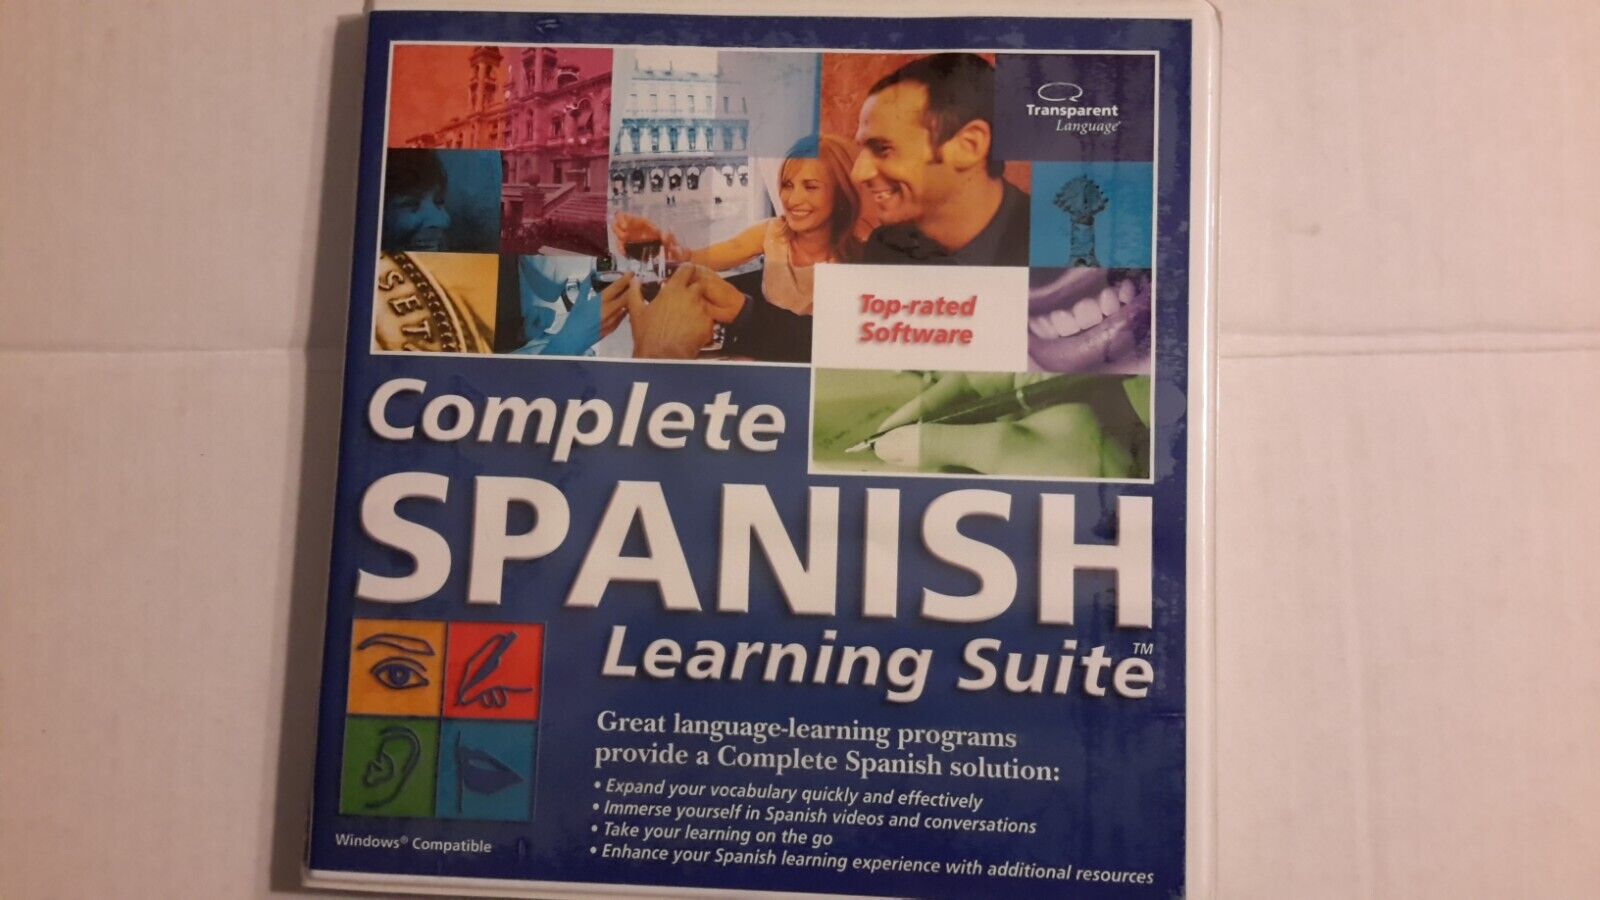 Transparent Language & QuickStart & Visual Language Spanish Learning 6 Disk Kit